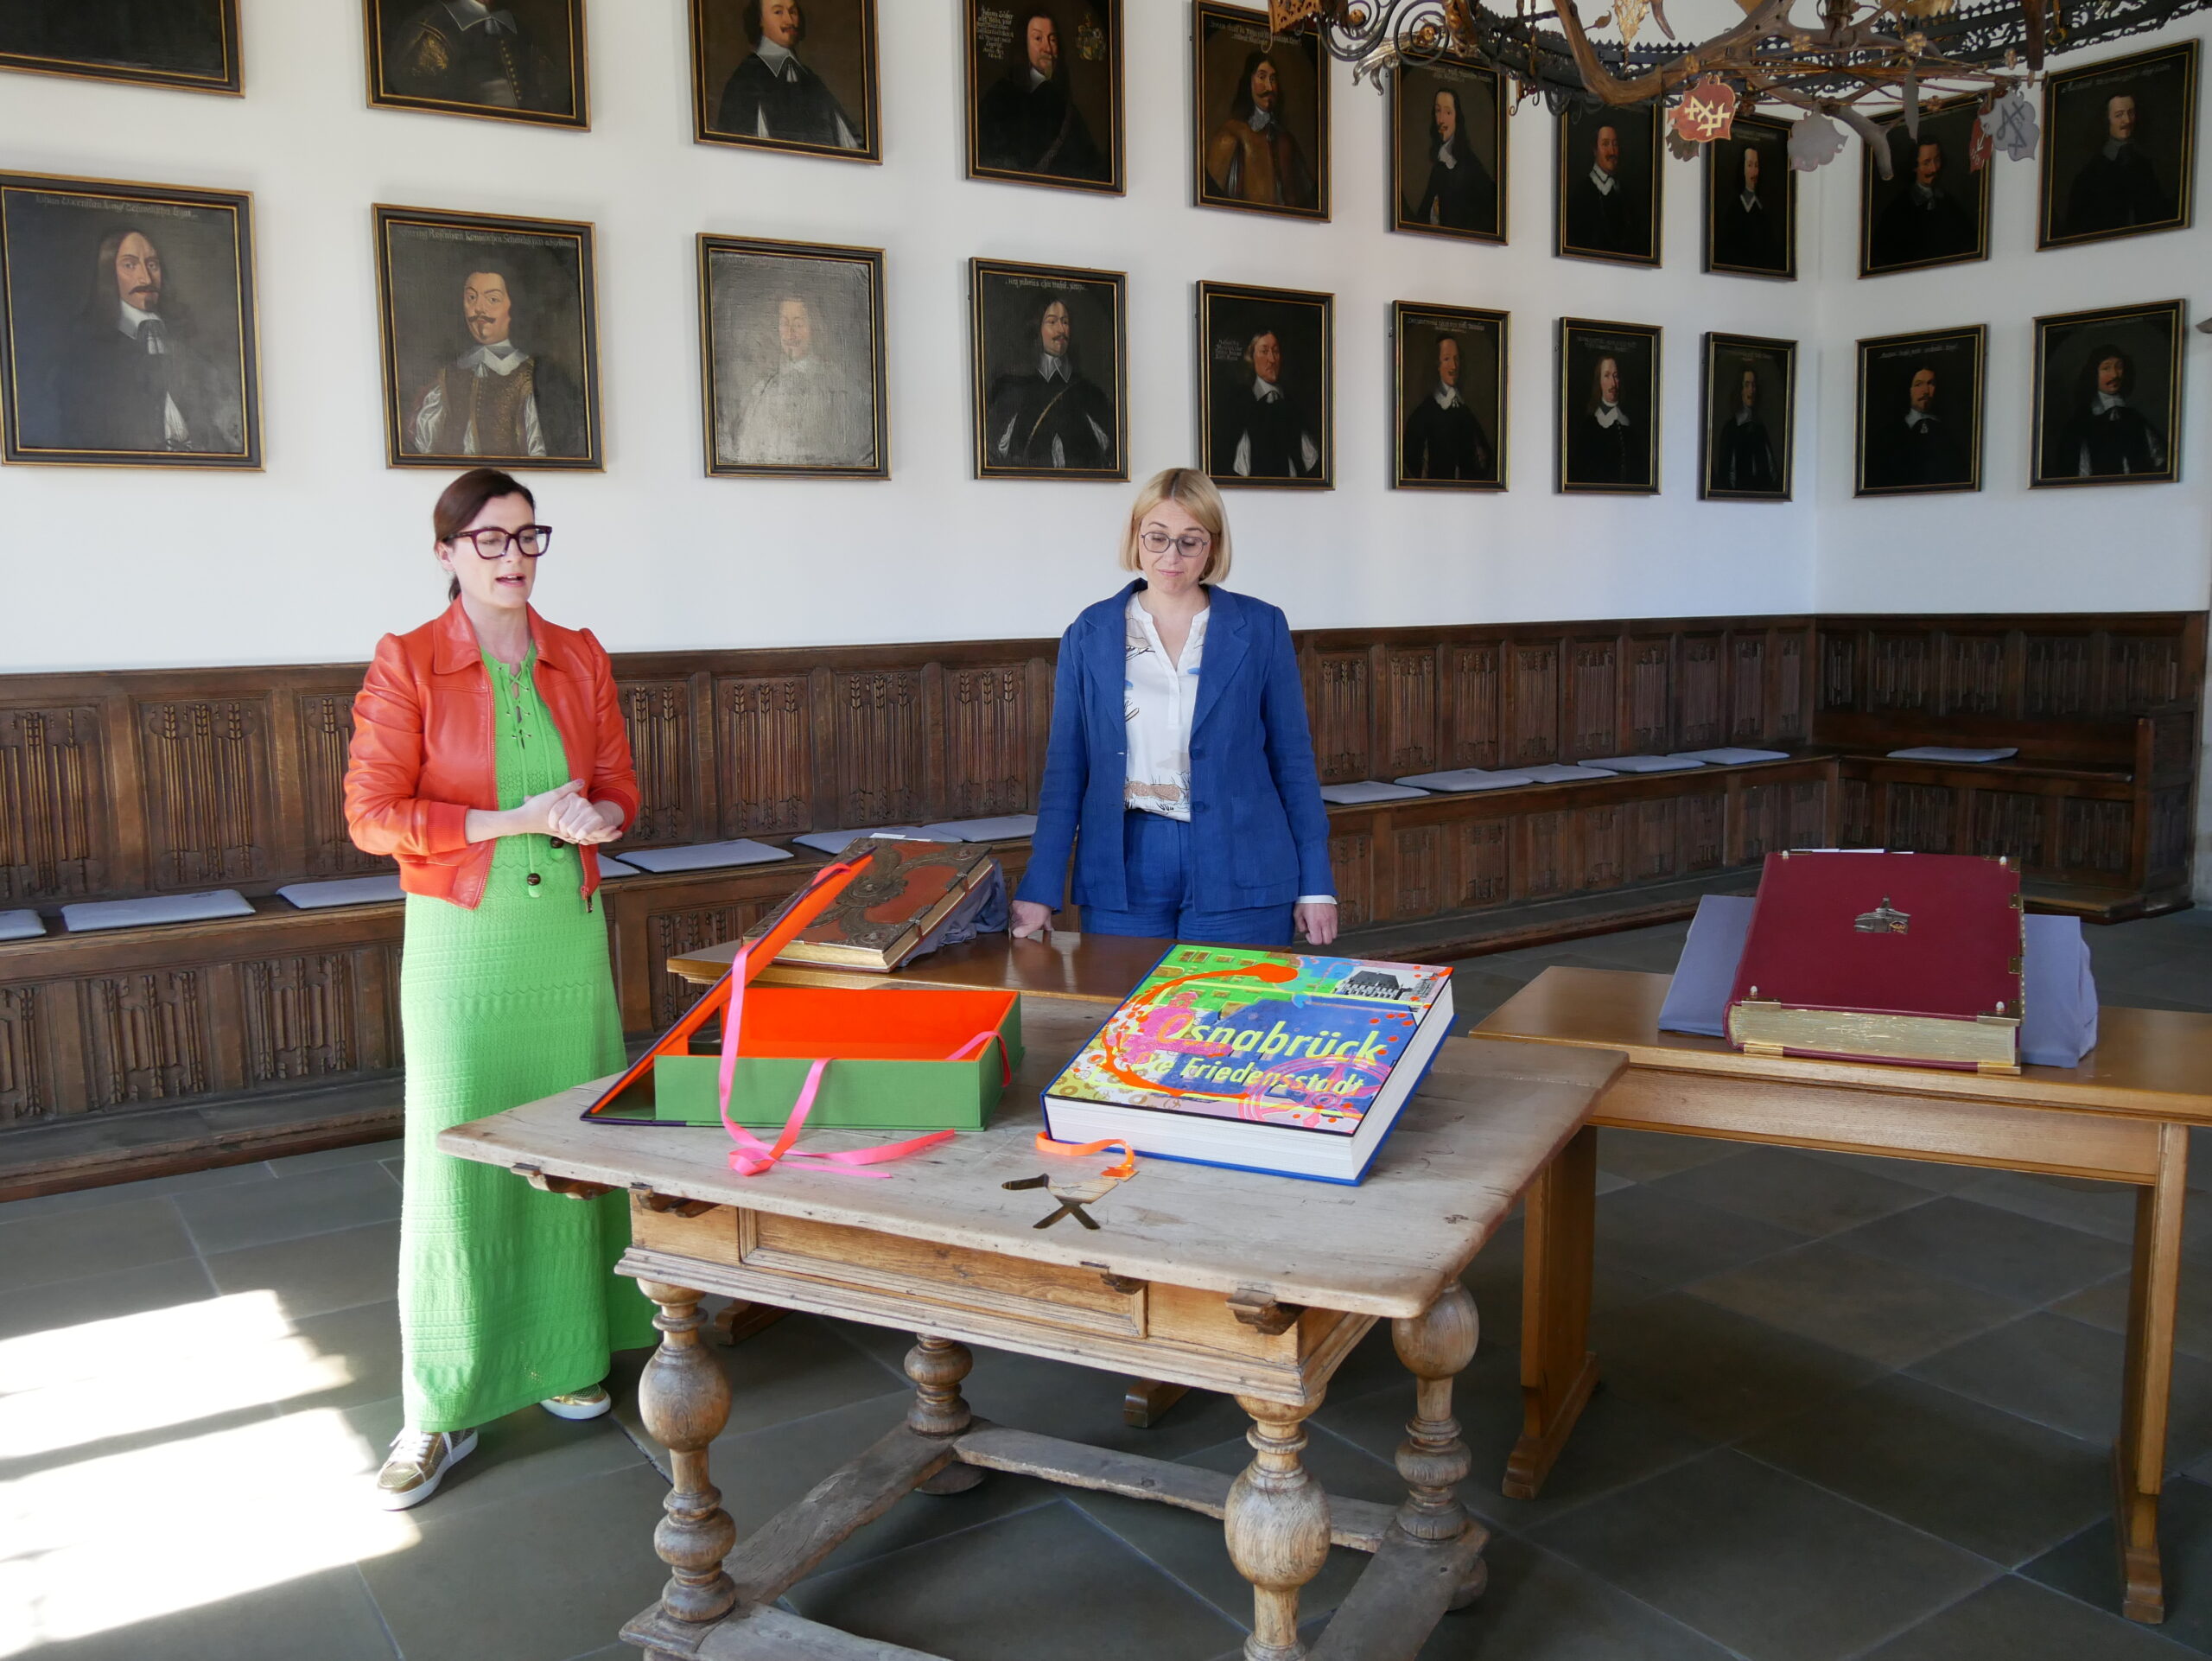 Ein neues Kapitel für Osnabrück: Das dritte Goldene Buch soll in eine bunte Ära führen